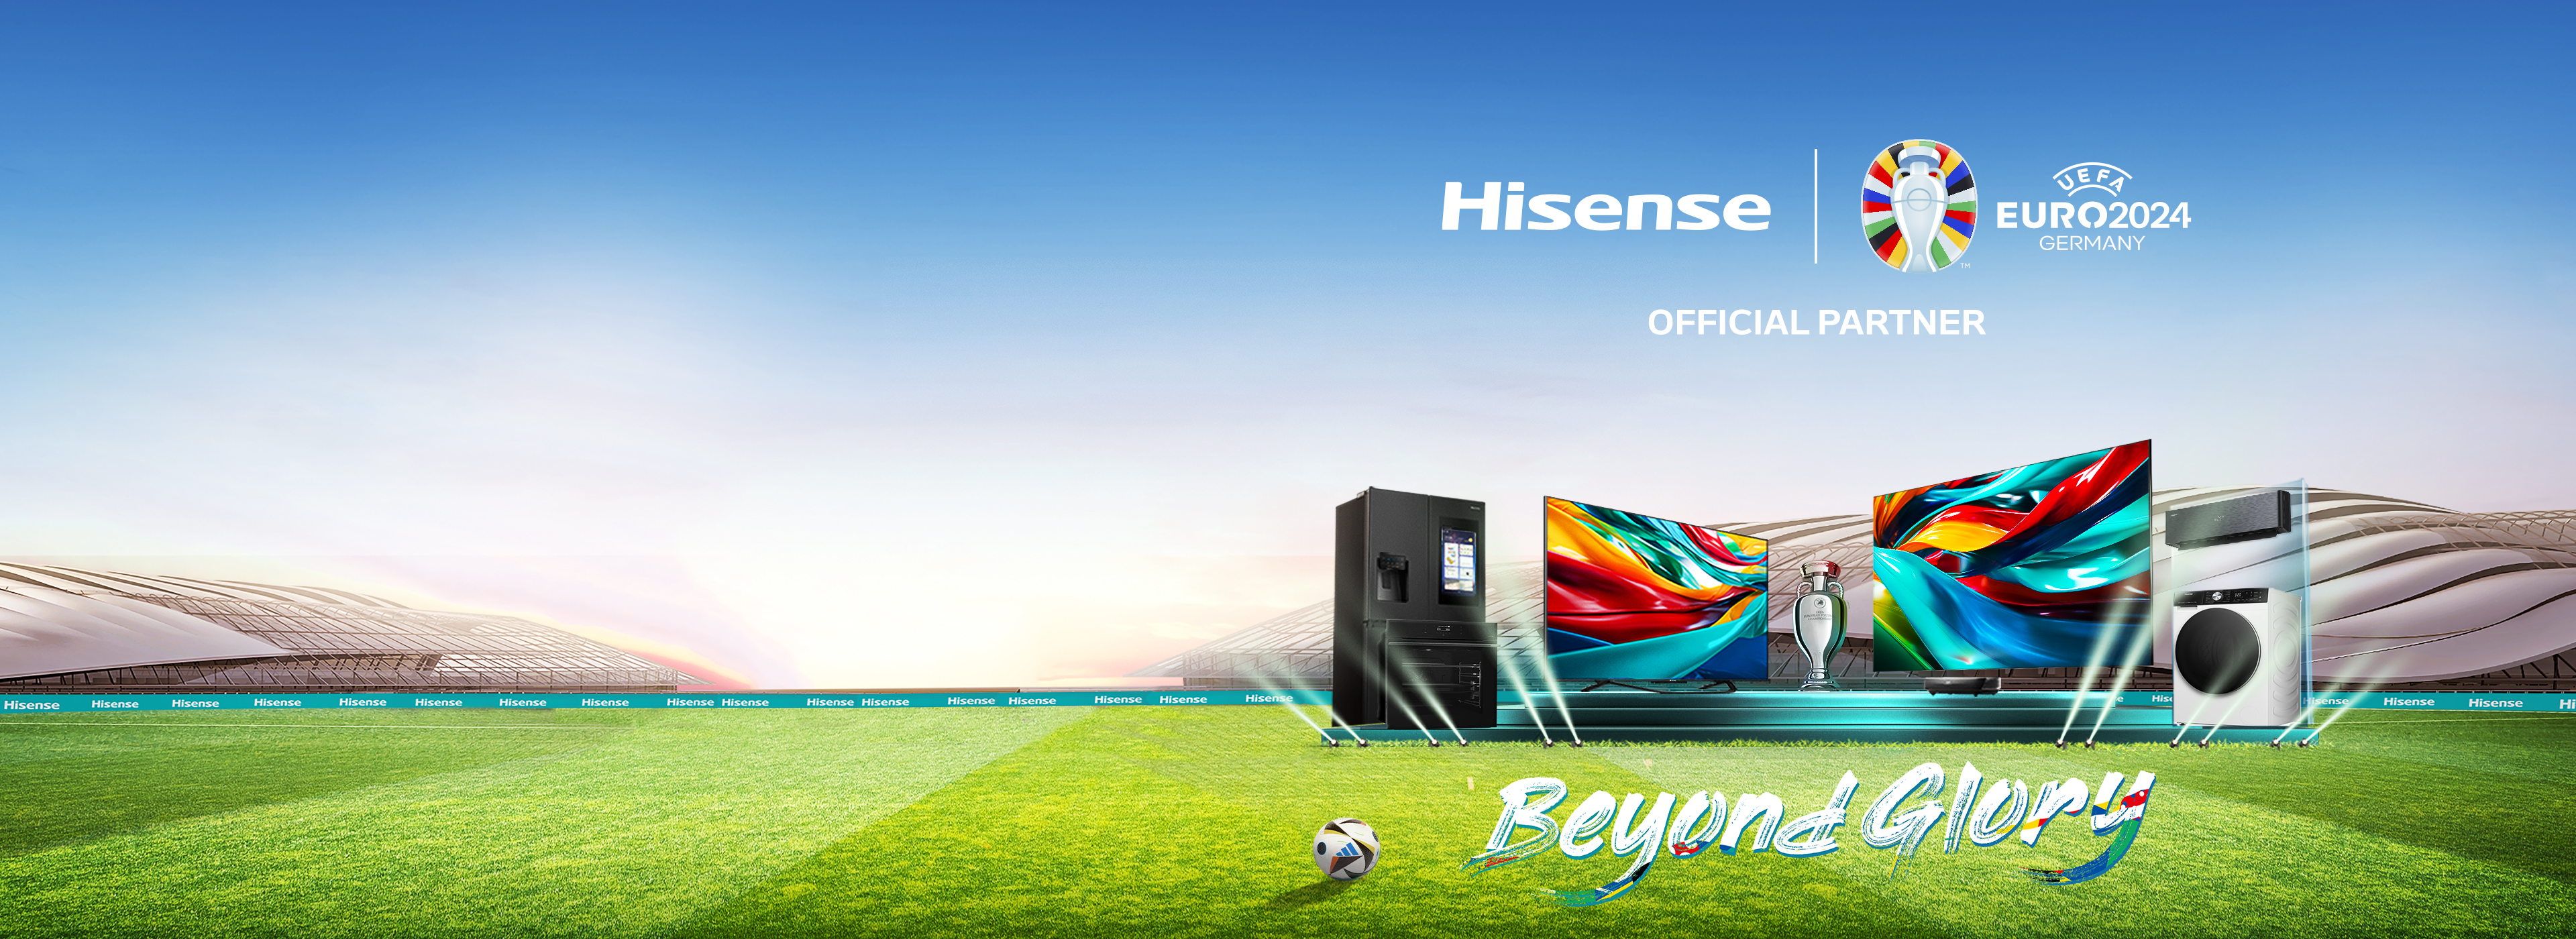 Hisense-HERO-desktop-template-3840x1400px-02.jpg